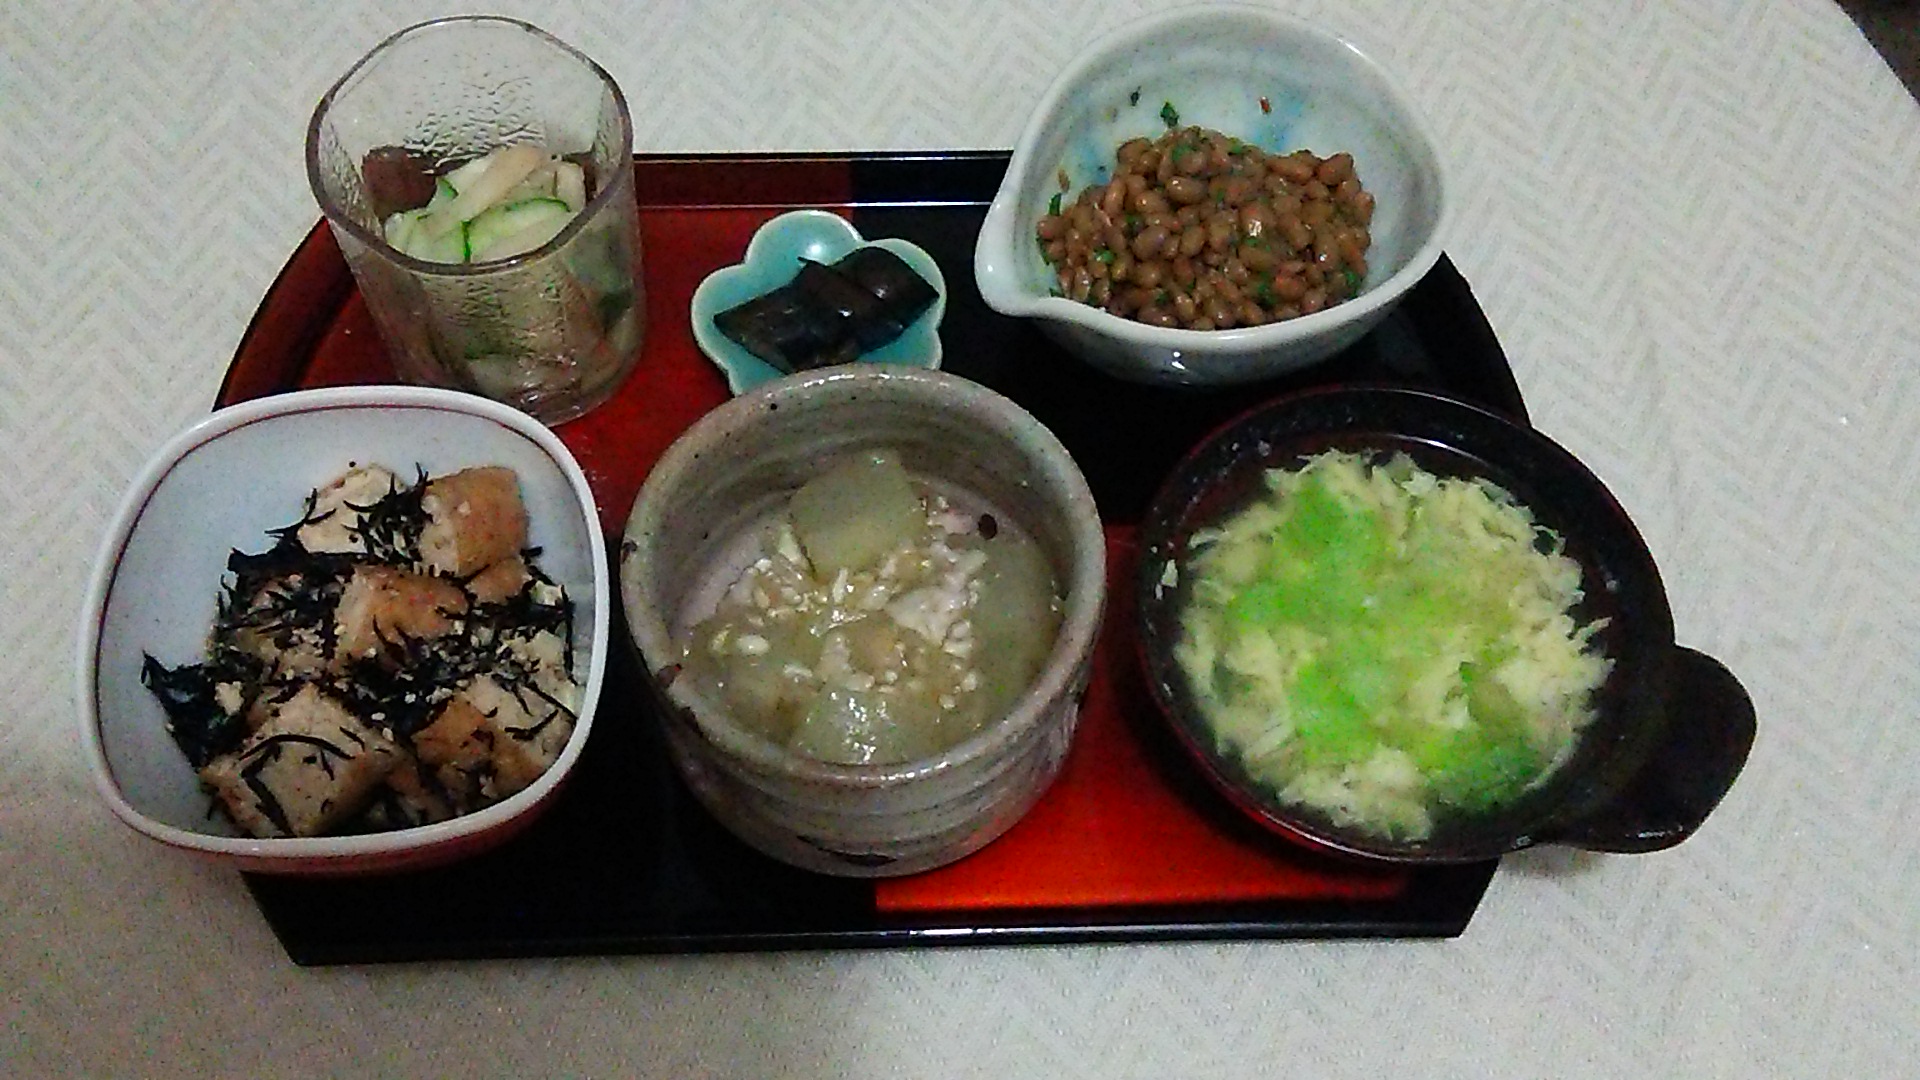 冬瓜のあんかけ、ひじき煮、きゅうりとらきょうの甘酢和え、納豆、かき玉スープ